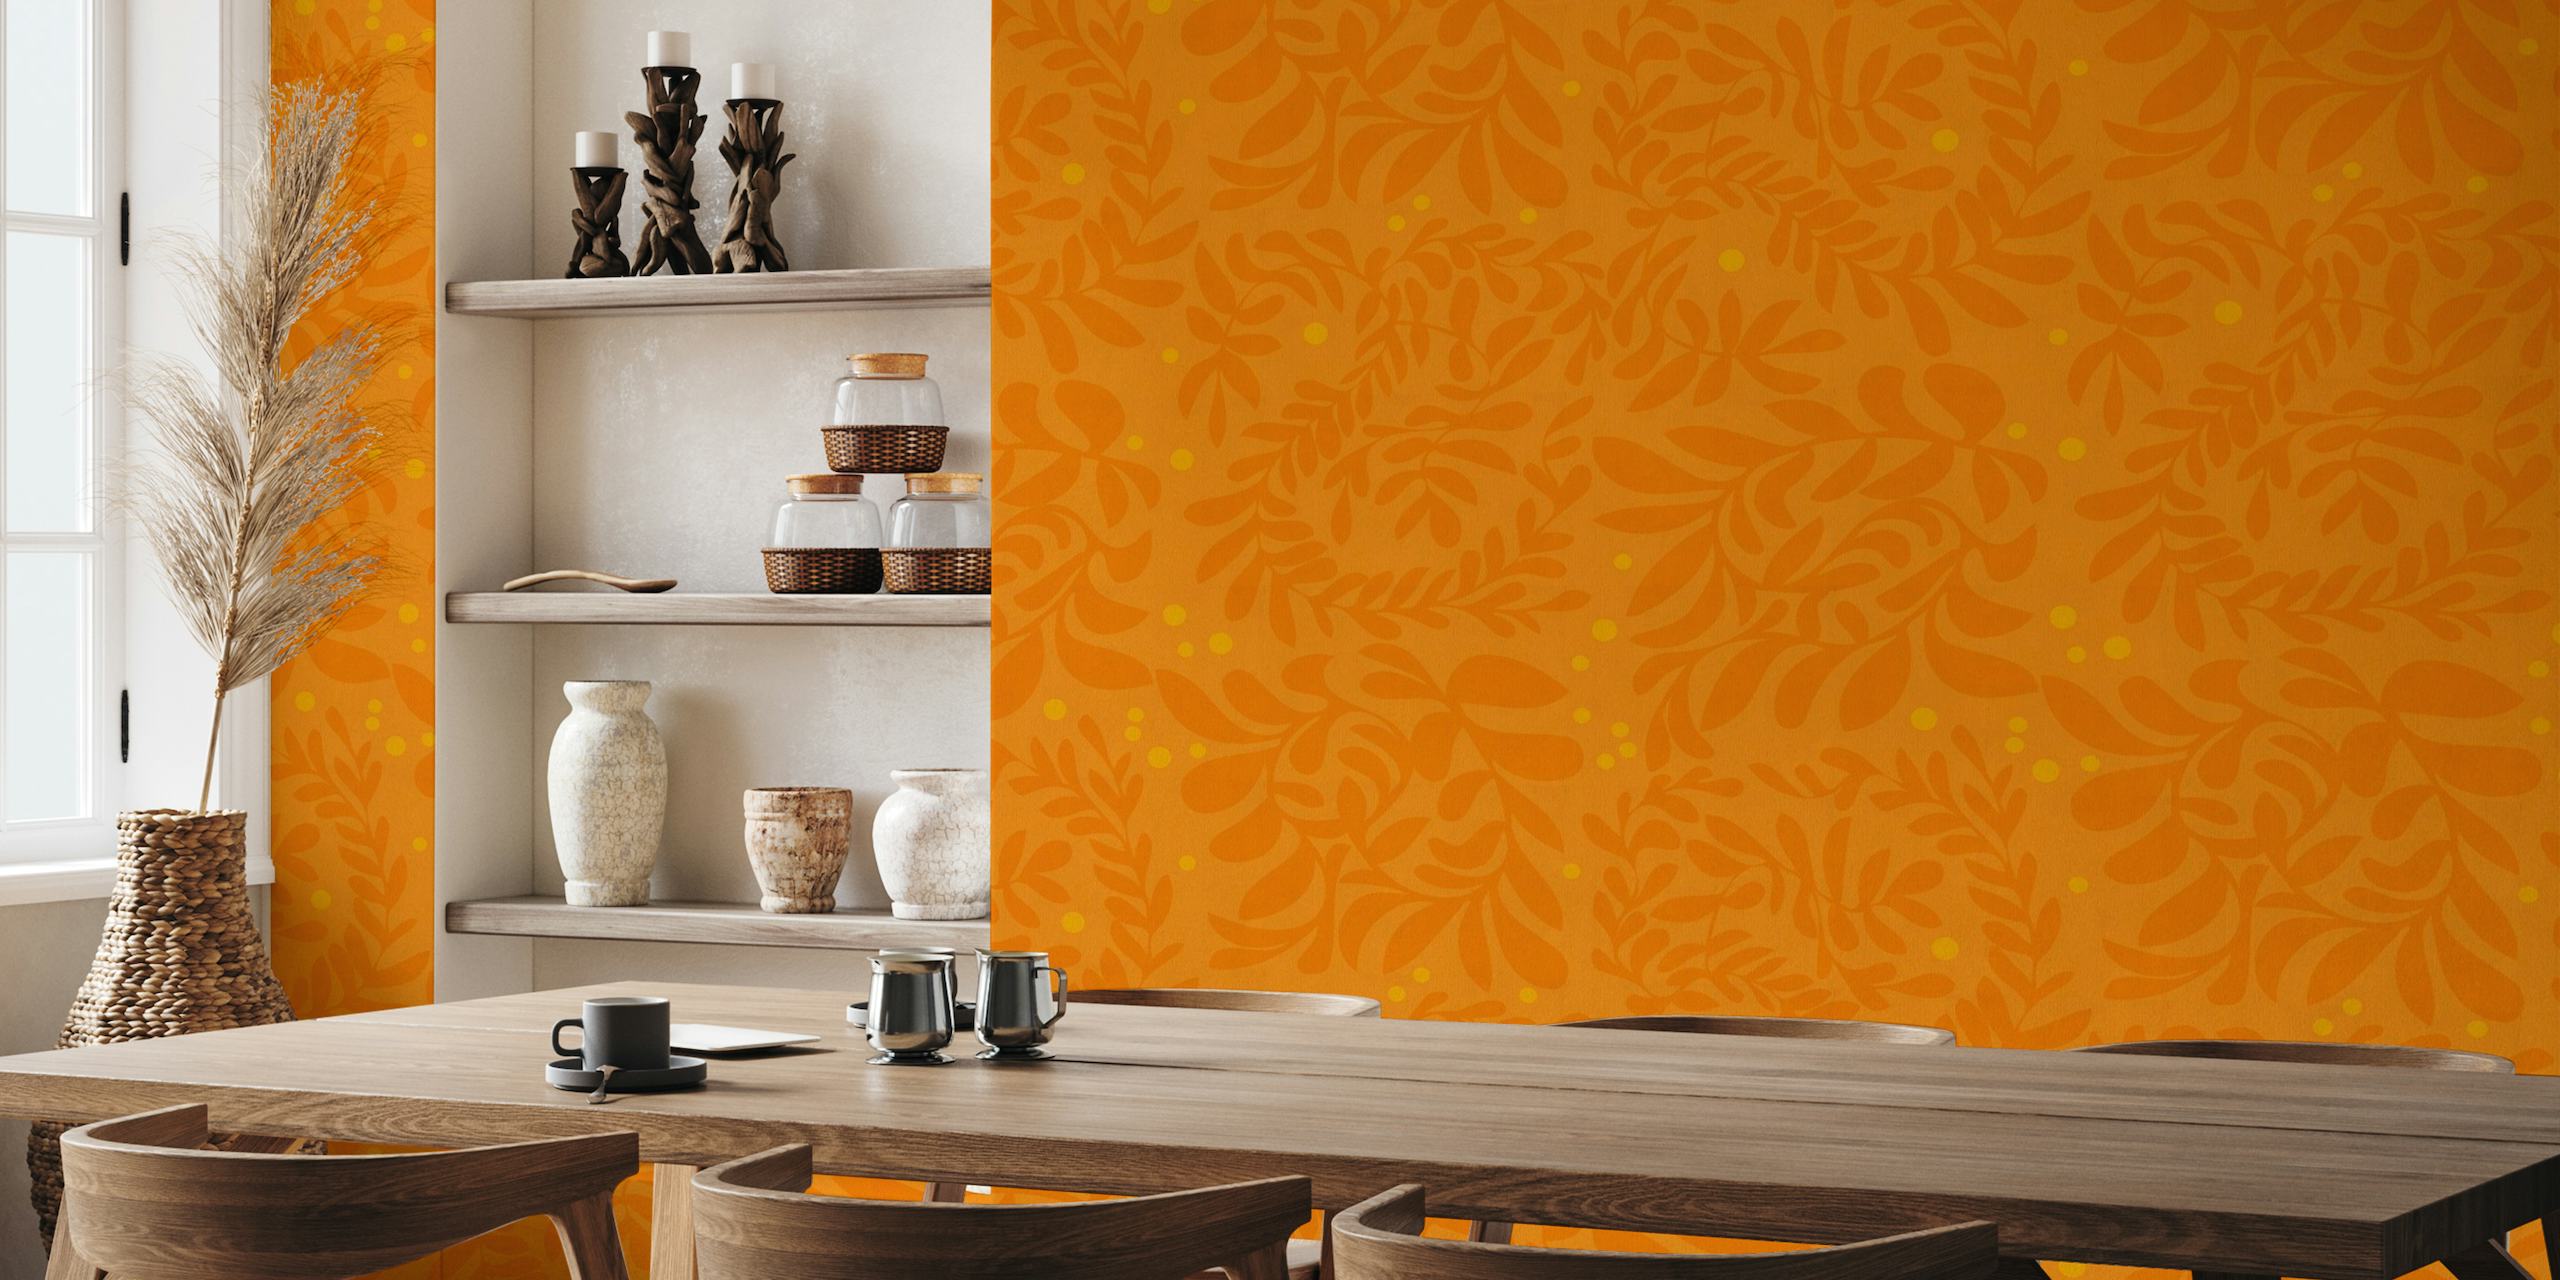 Op de herfst geïnspireerde muurschildering met een bladpatroon op een oranje achtergrond.